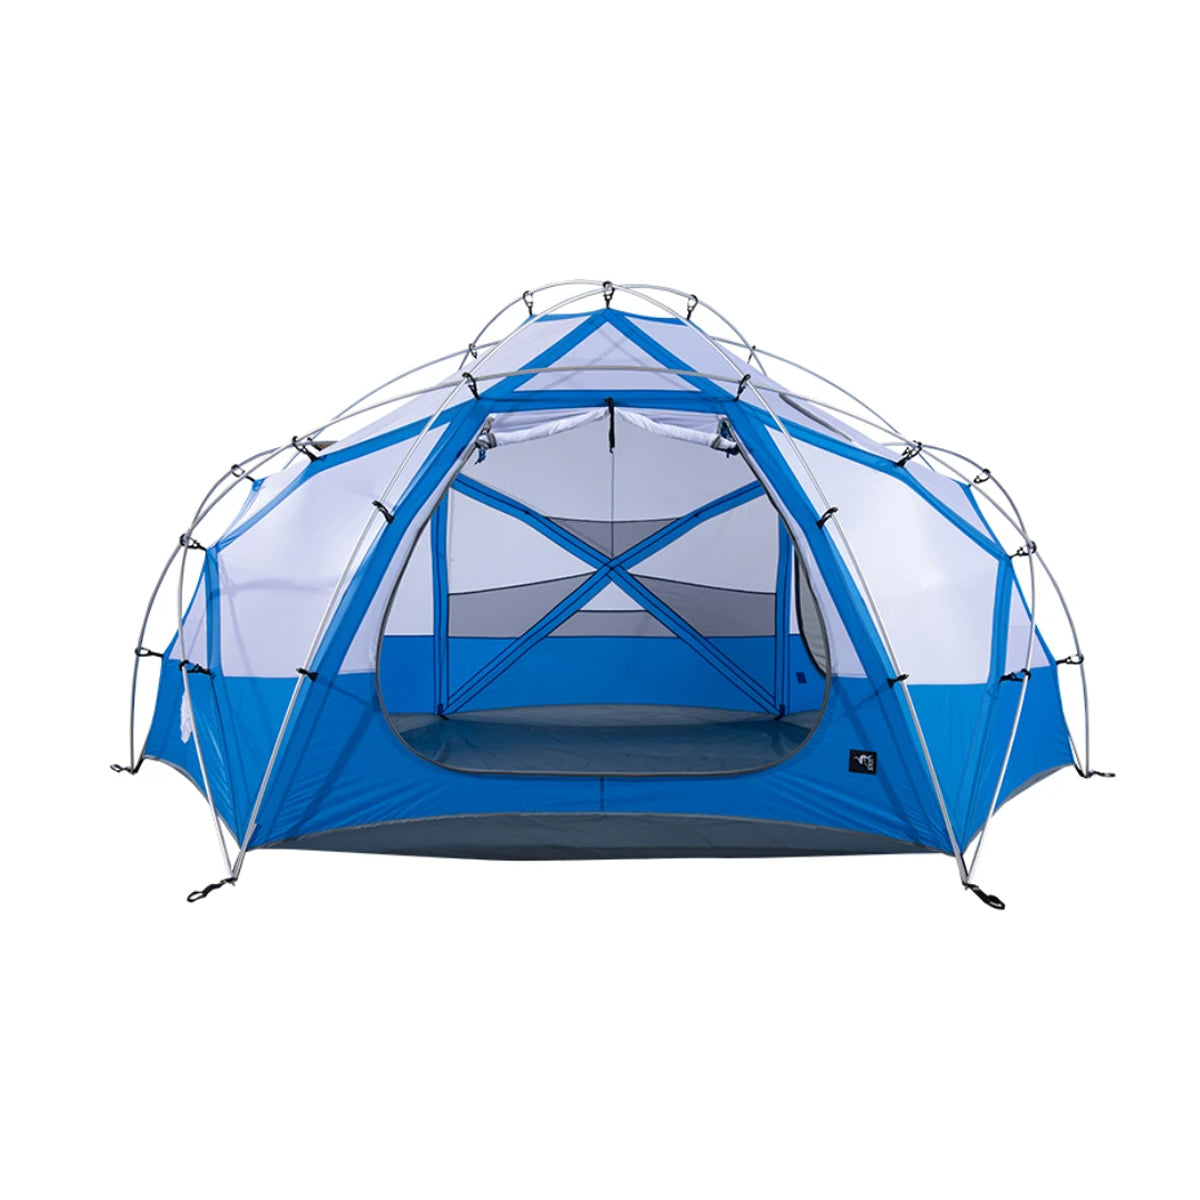 Stone Glacier Dome 6 Person Tent